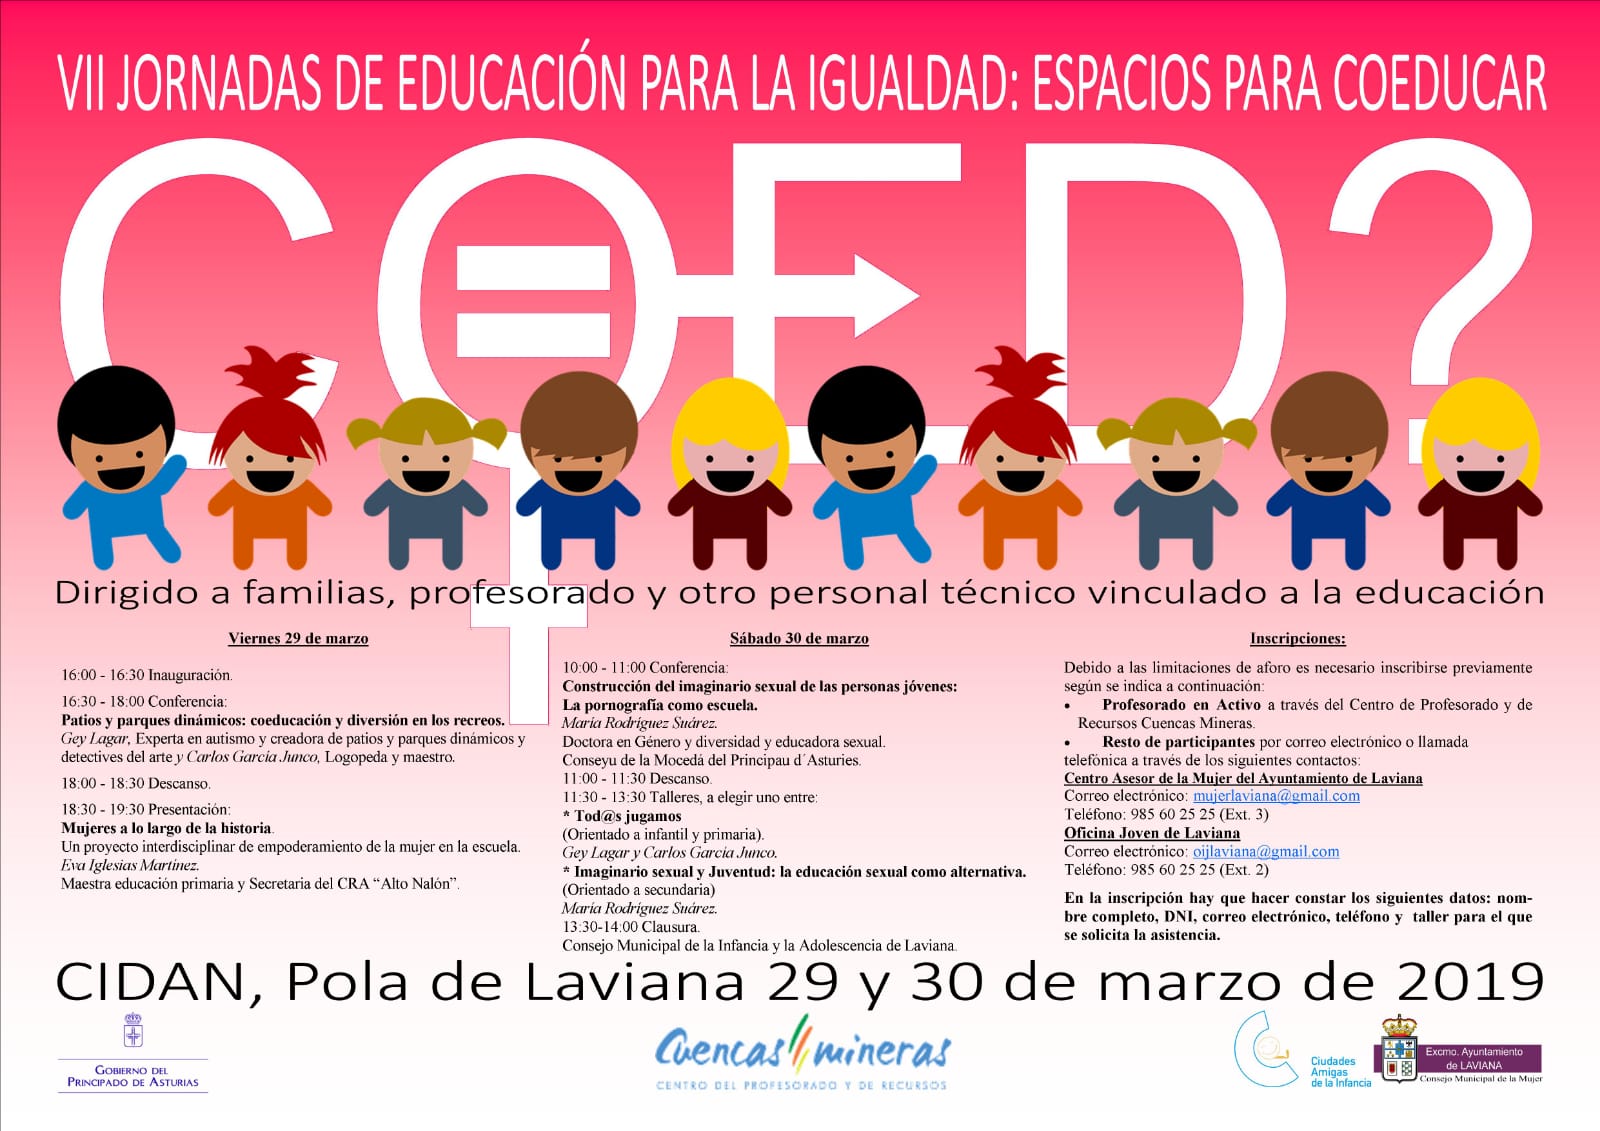 VII Jornadas de Educación para la Igualdad: espacios para coeducar